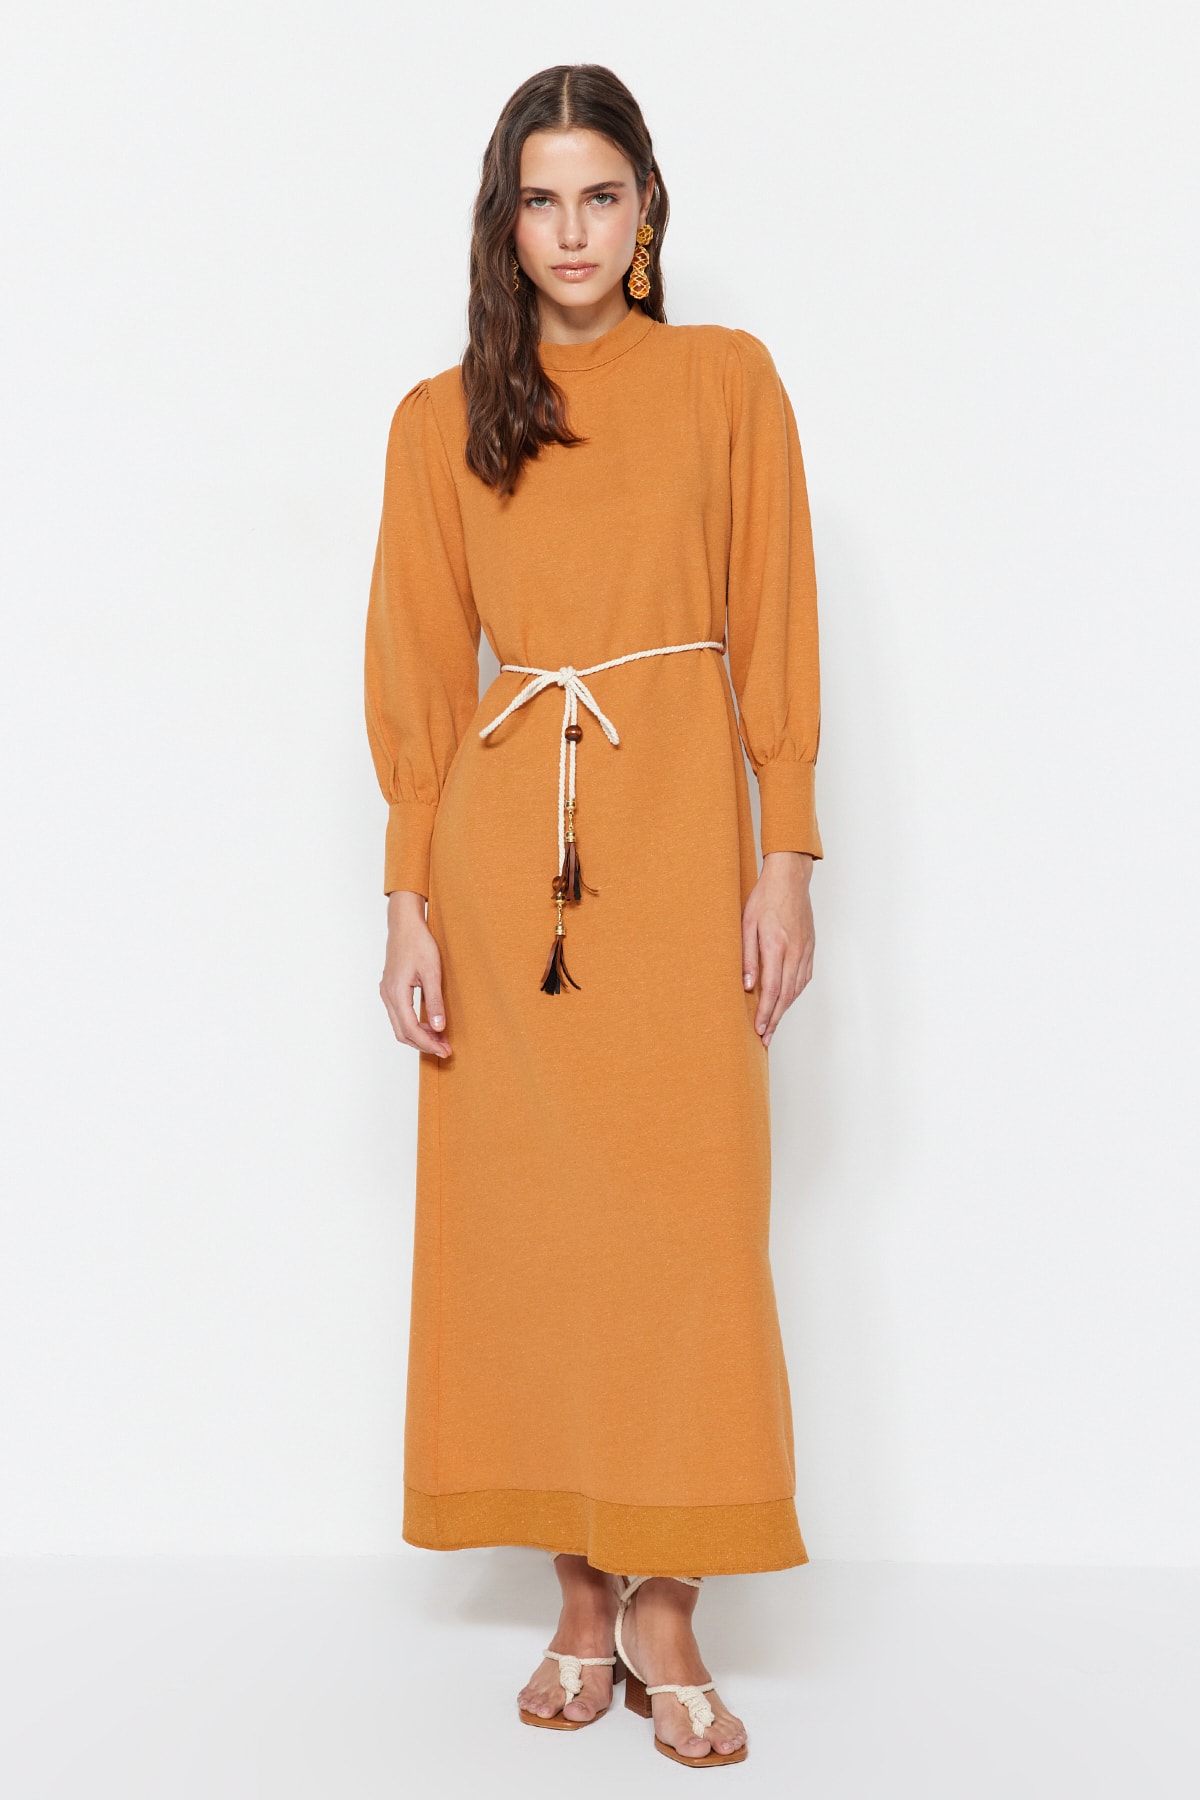 Trendyol Cinnamon Belt Detailed Wide Cuff Linen Look Woven Dress